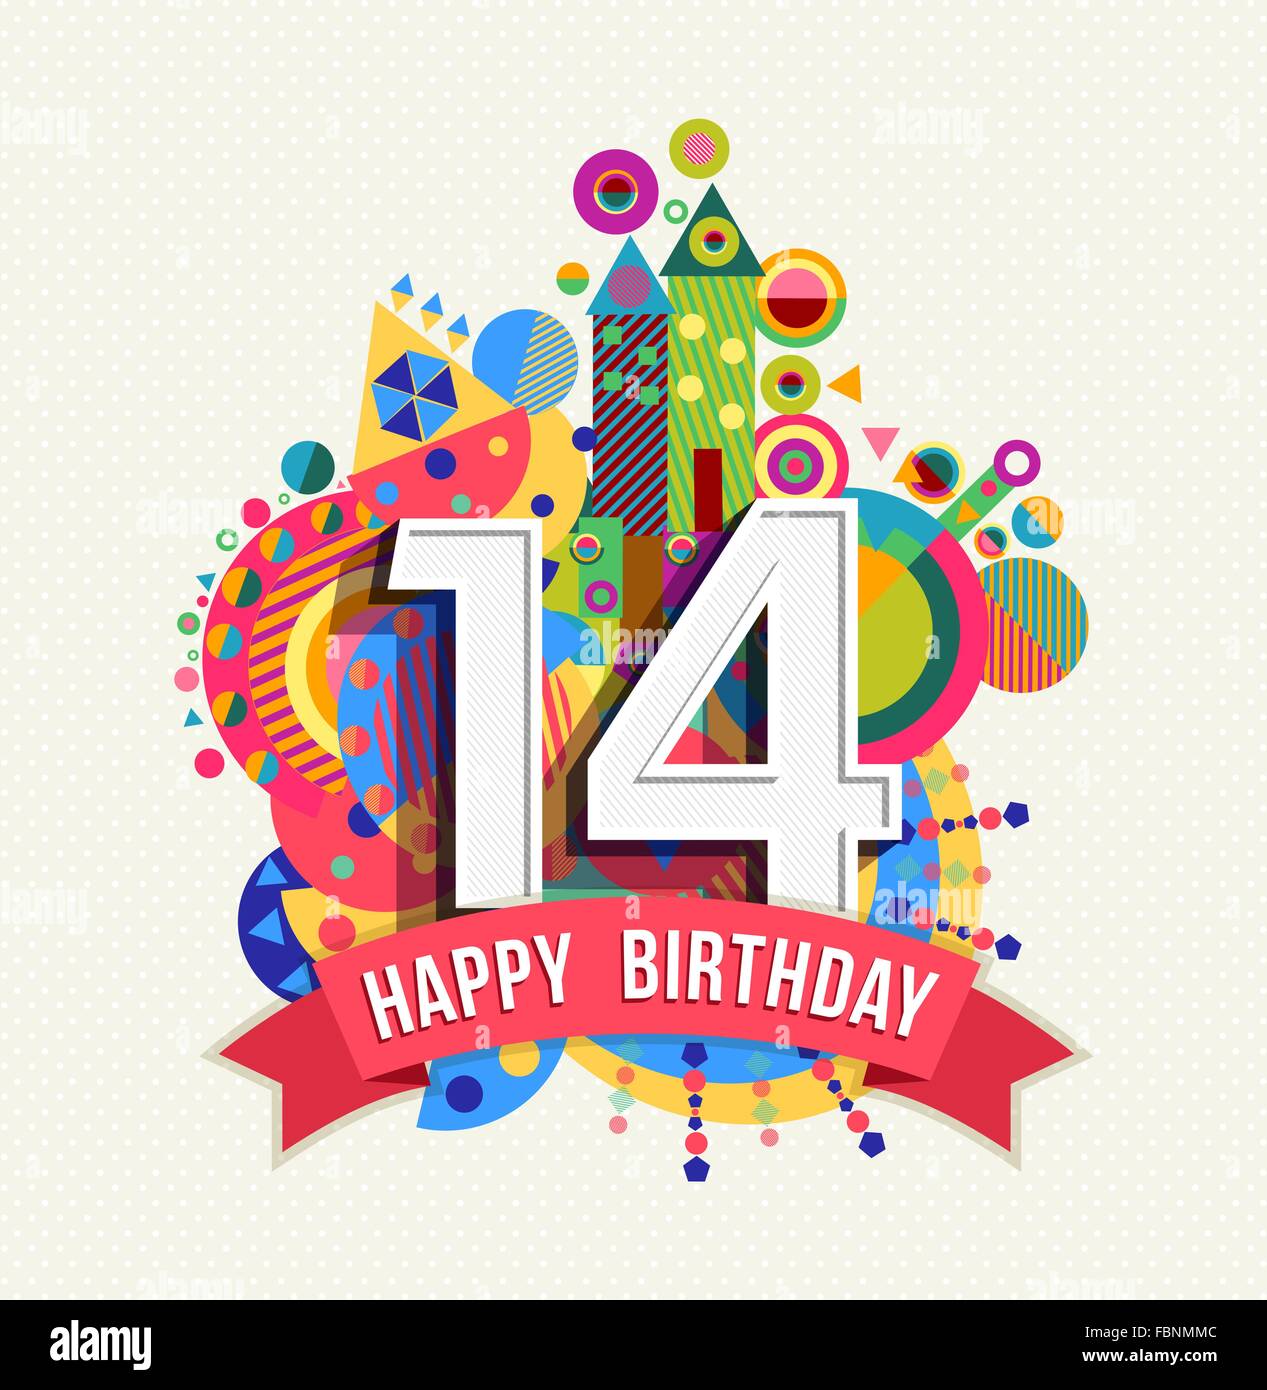 Joyeux anniversaire 14 ans, carte de souhaits fête amusante avec étiquette de texte, nombre et géométrie colorée design. EPS10 Illustration de Vecteur